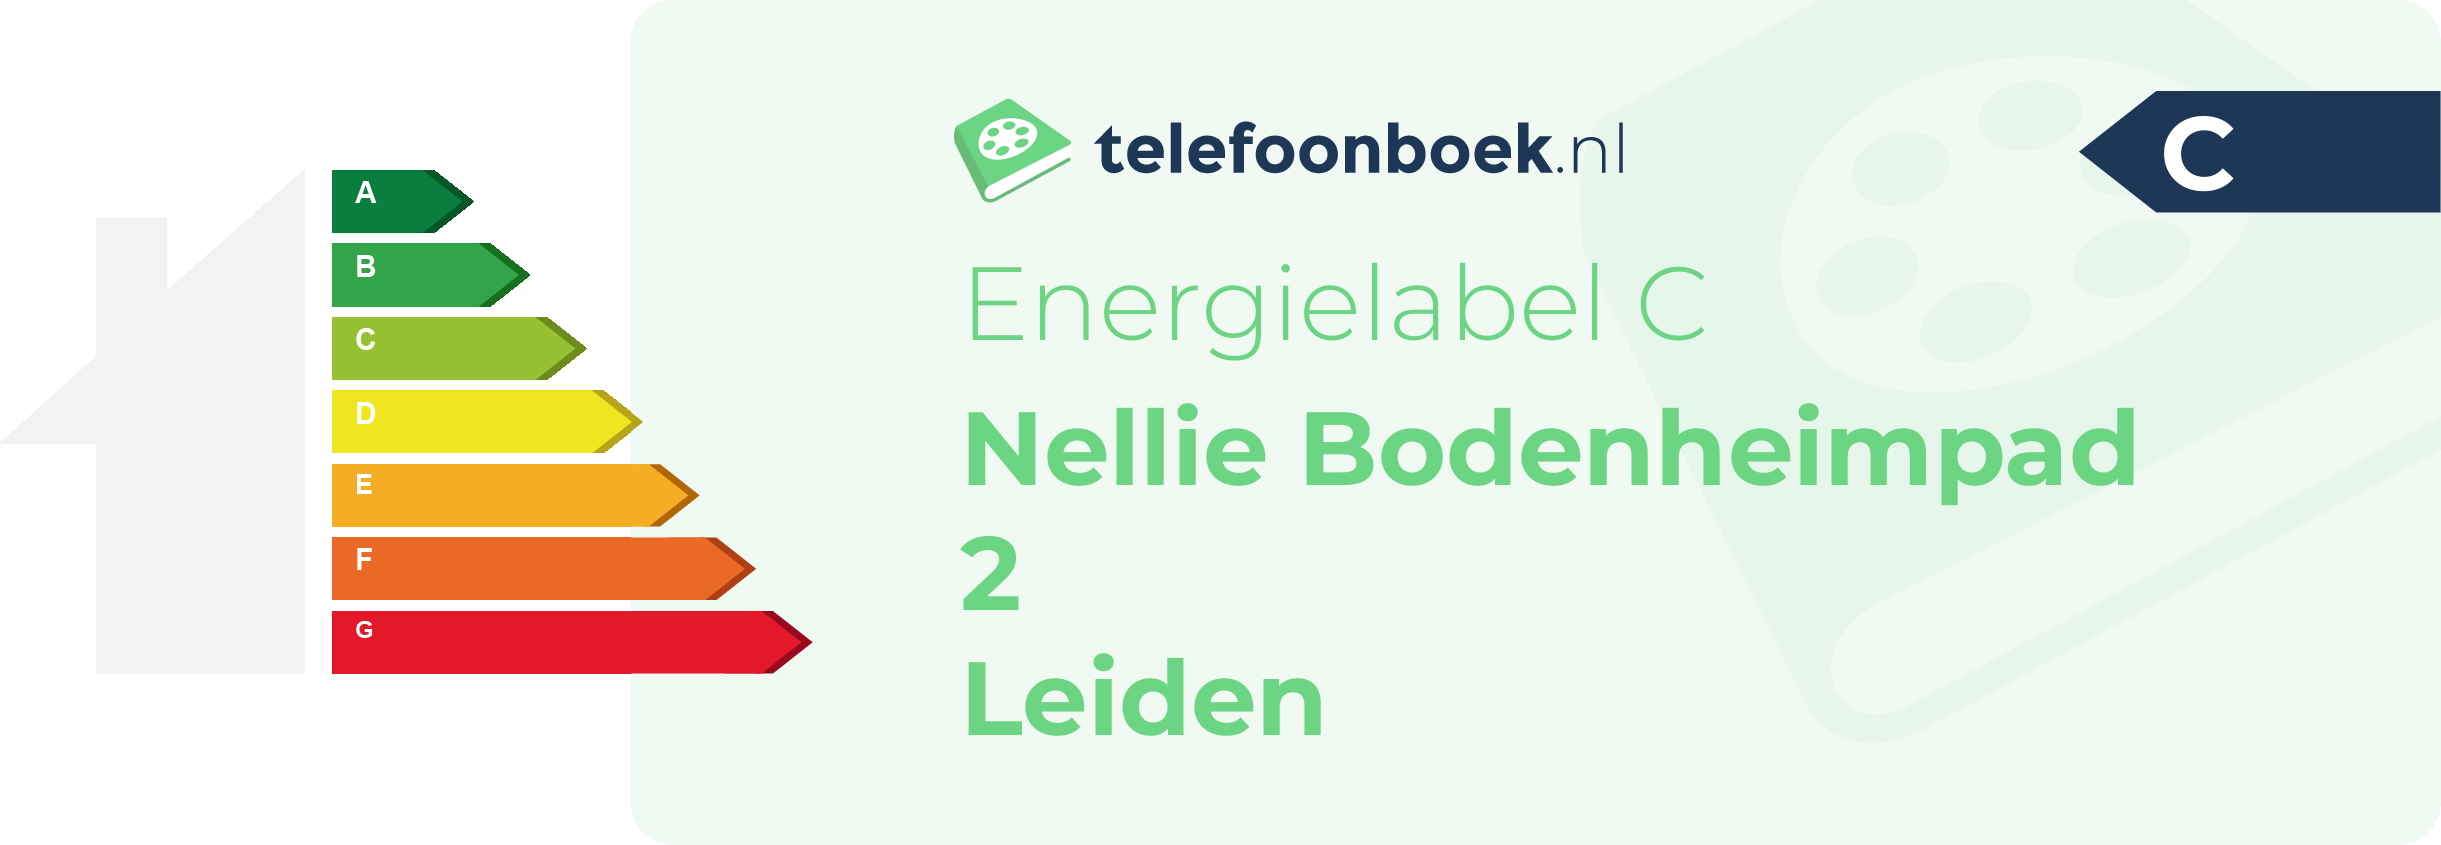 Energielabel Nellie Bodenheimpad 2 Leiden